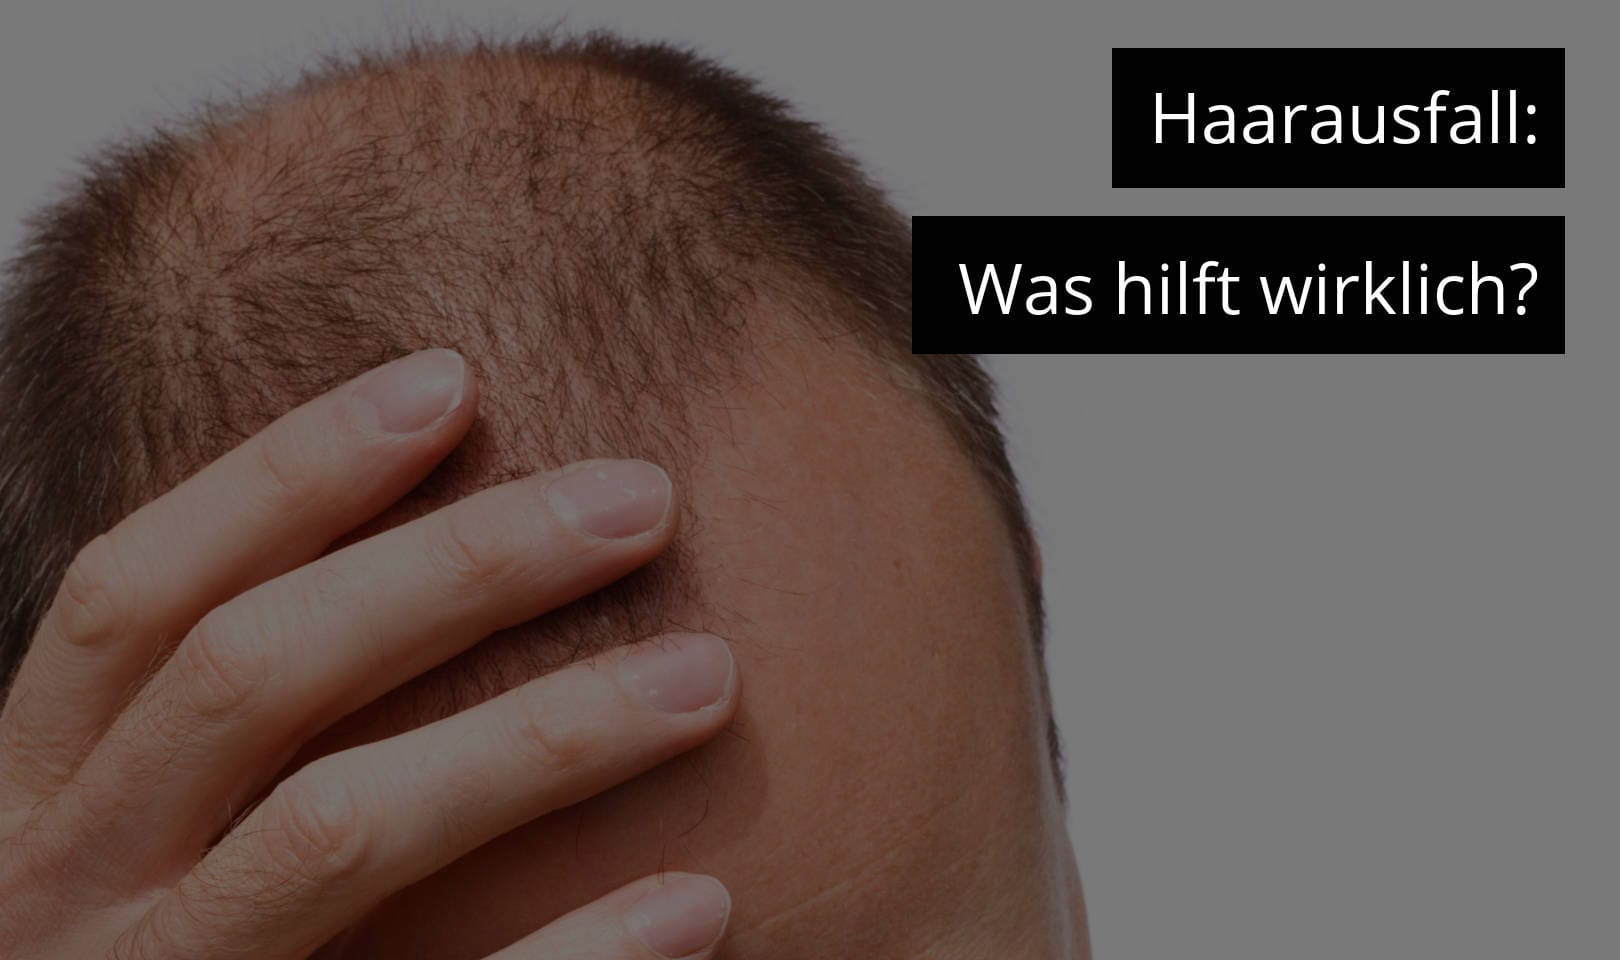 Haarausfall - was hilft wirklich?